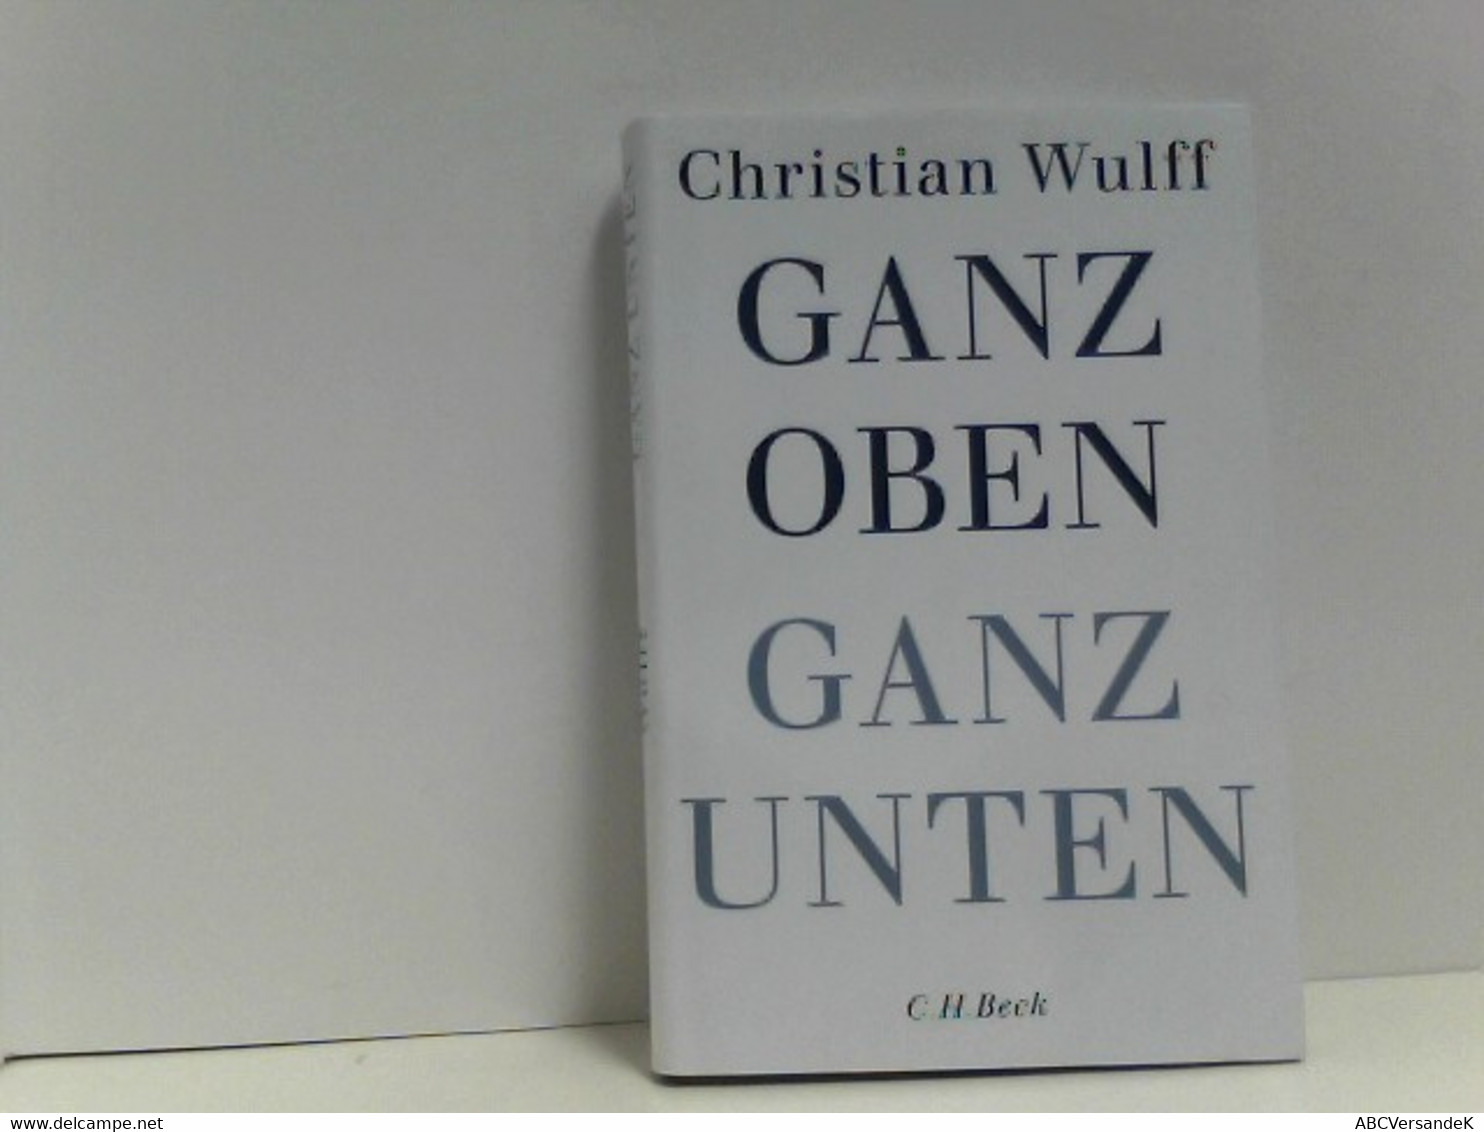 Ganz Oben Ganz Unten - Biographien & Memoiren